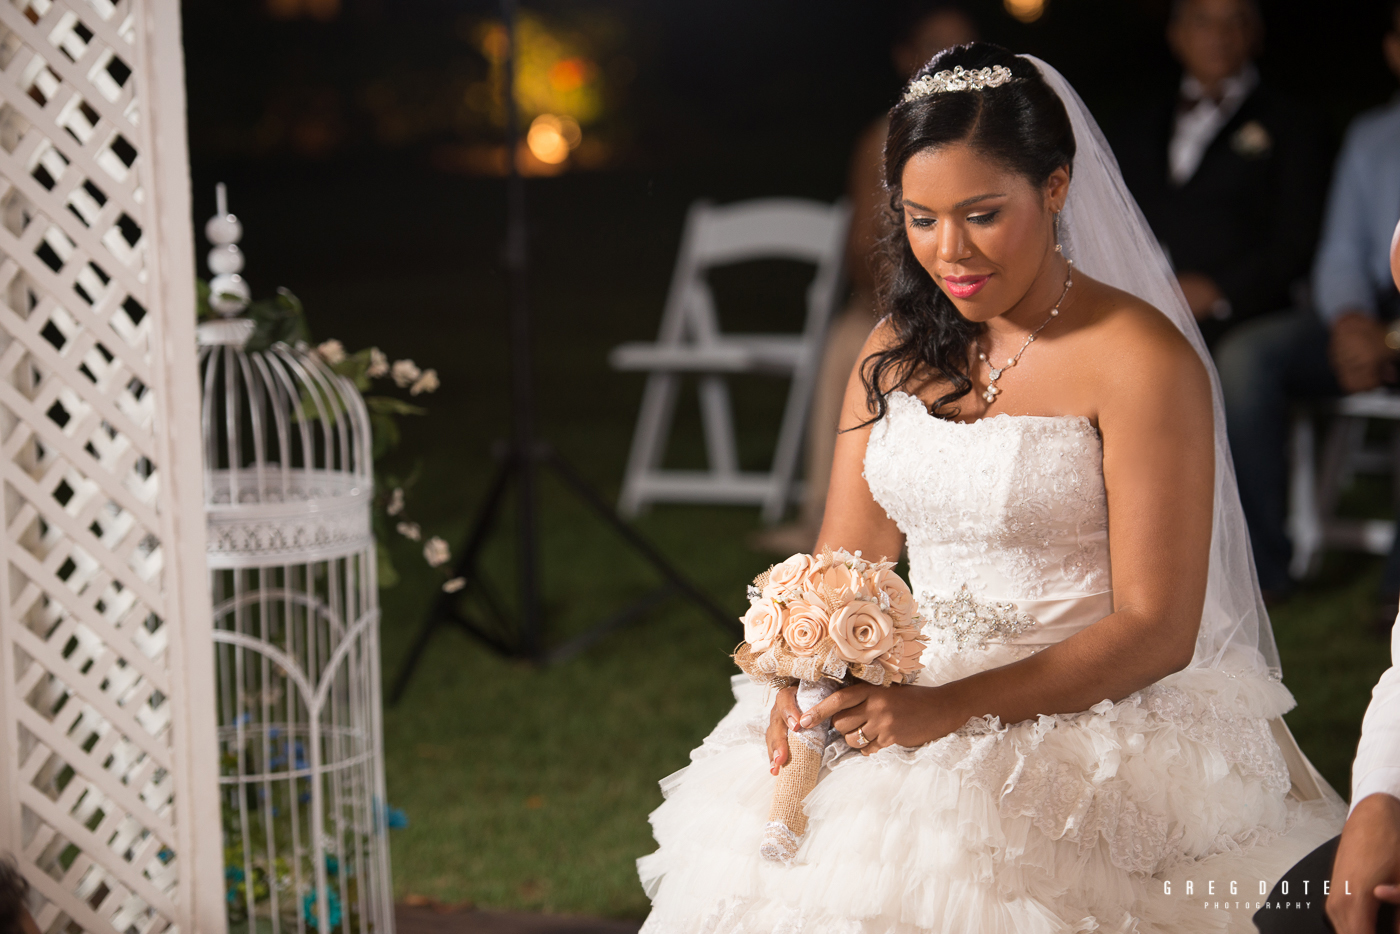 Fotografo profesional de bodas y sesion de novios en Republica Dominicana